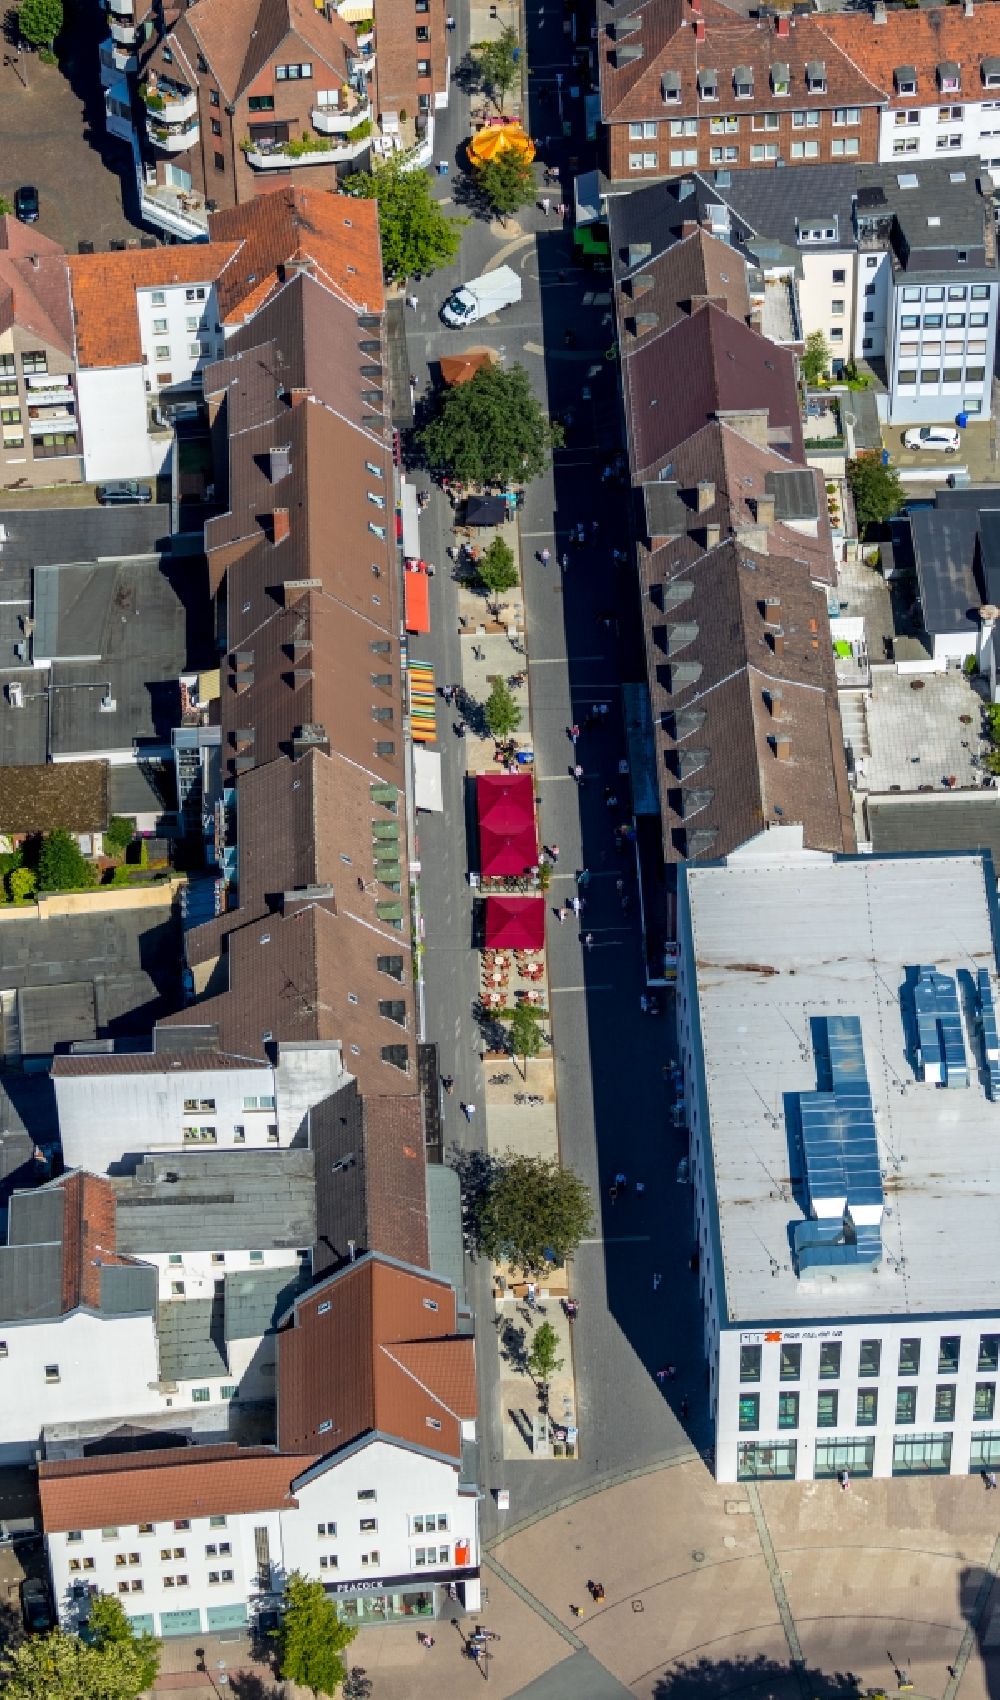 Luftaufnahme Gladbeck - Gebäudekomplexes eines Einkaufszentrum in Gladbeck im Bundesland Nordrhein-Westfalen, Deutschland